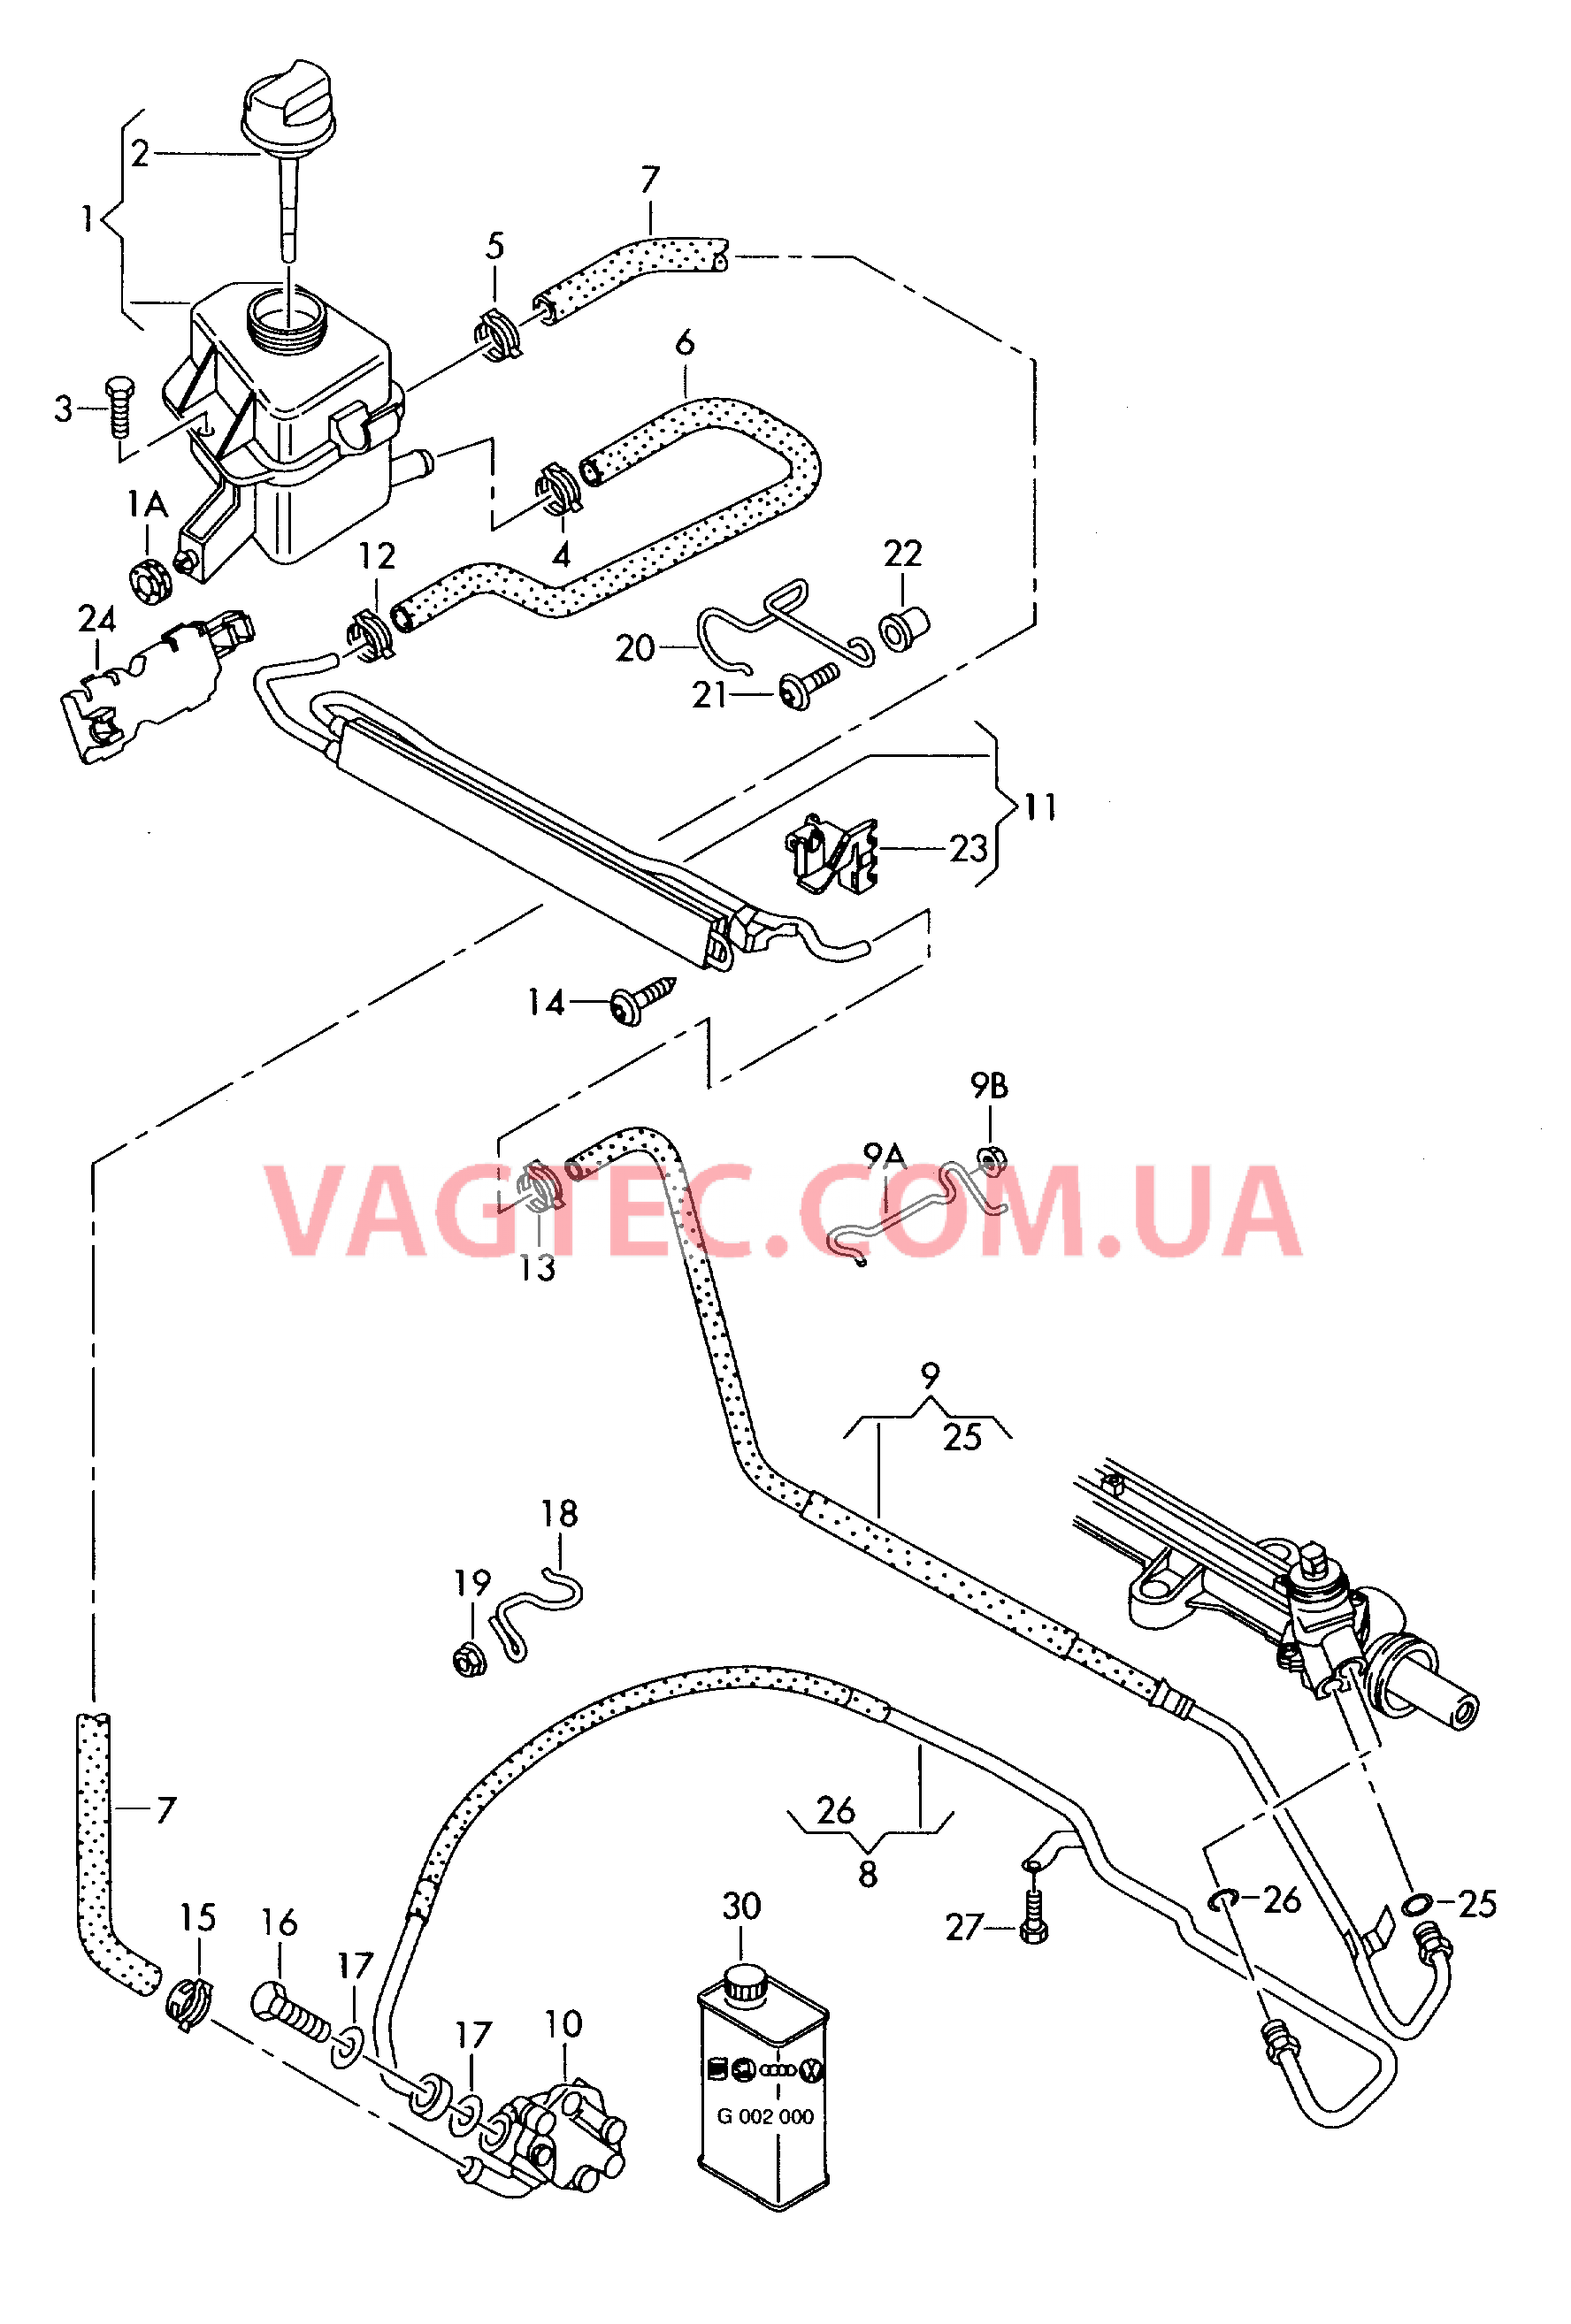 Масляный бачок с соединительными деталями, шлангами  для ГУРа  для VOLKSWAGEN Transporter 2003-2